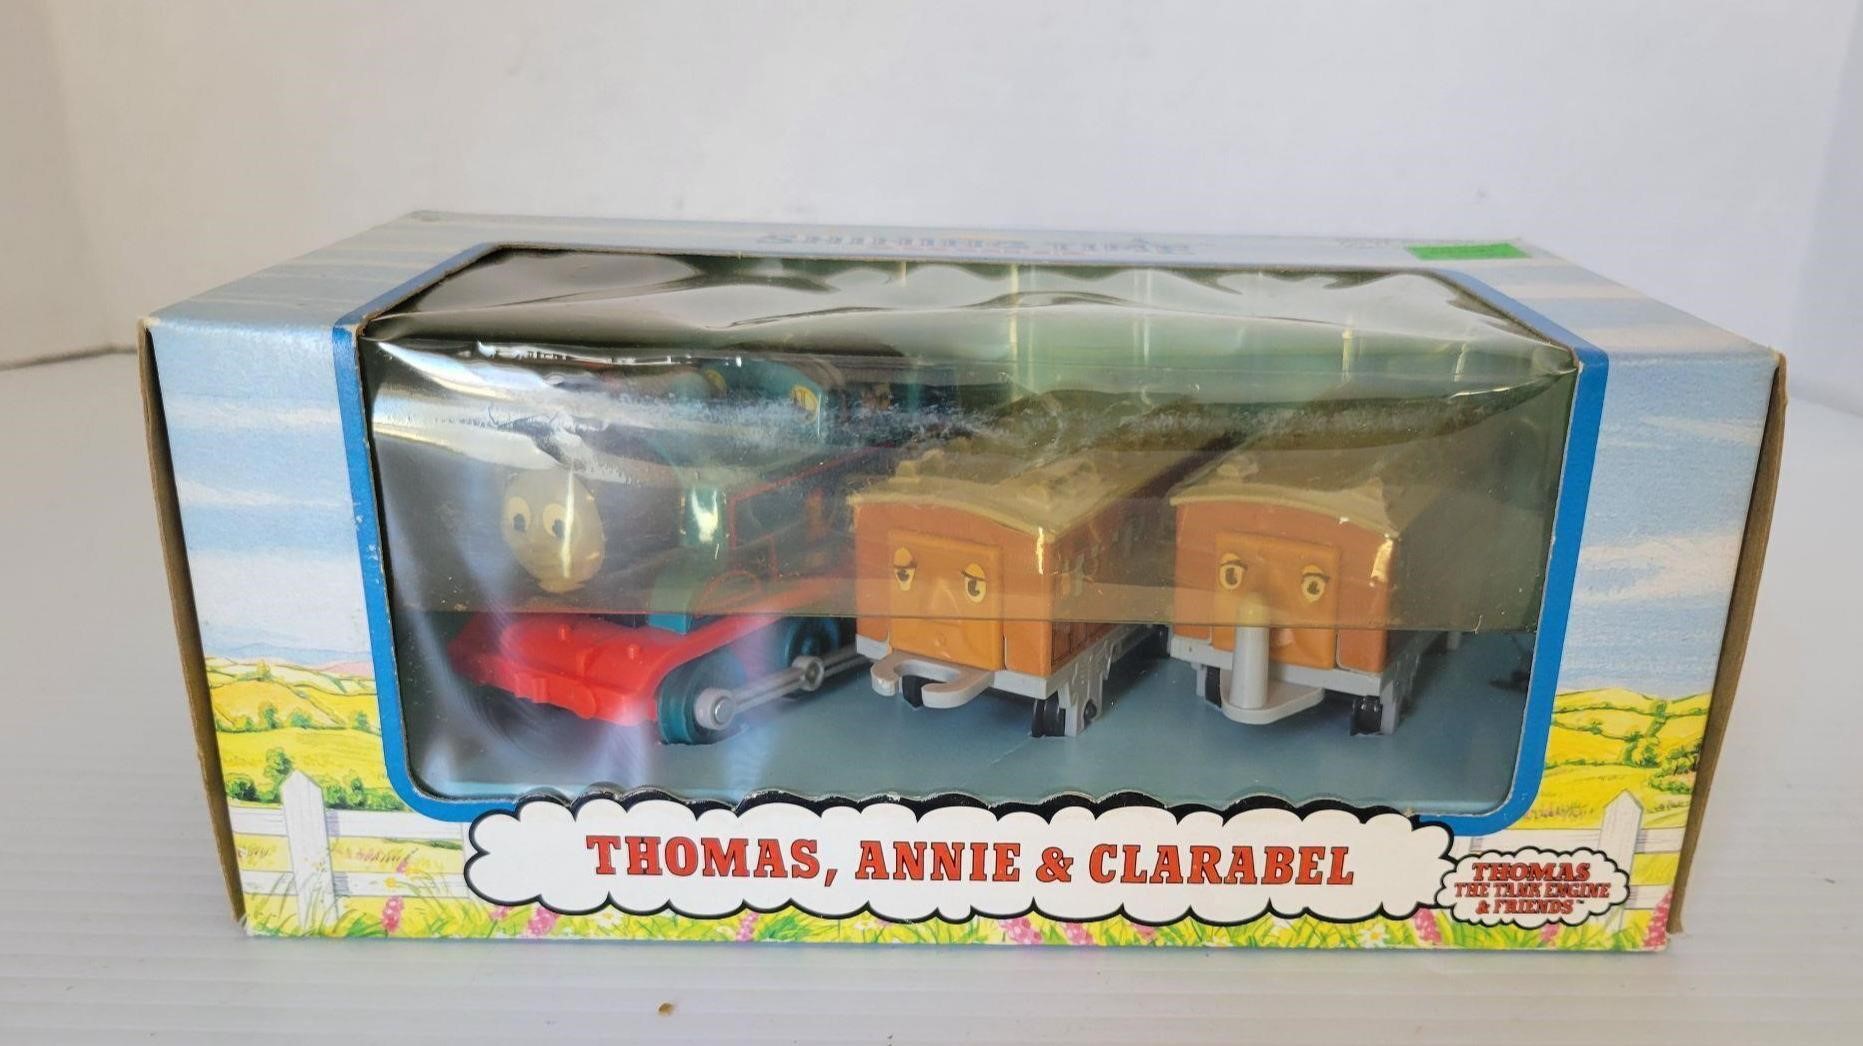 1993 Thomas The Train set